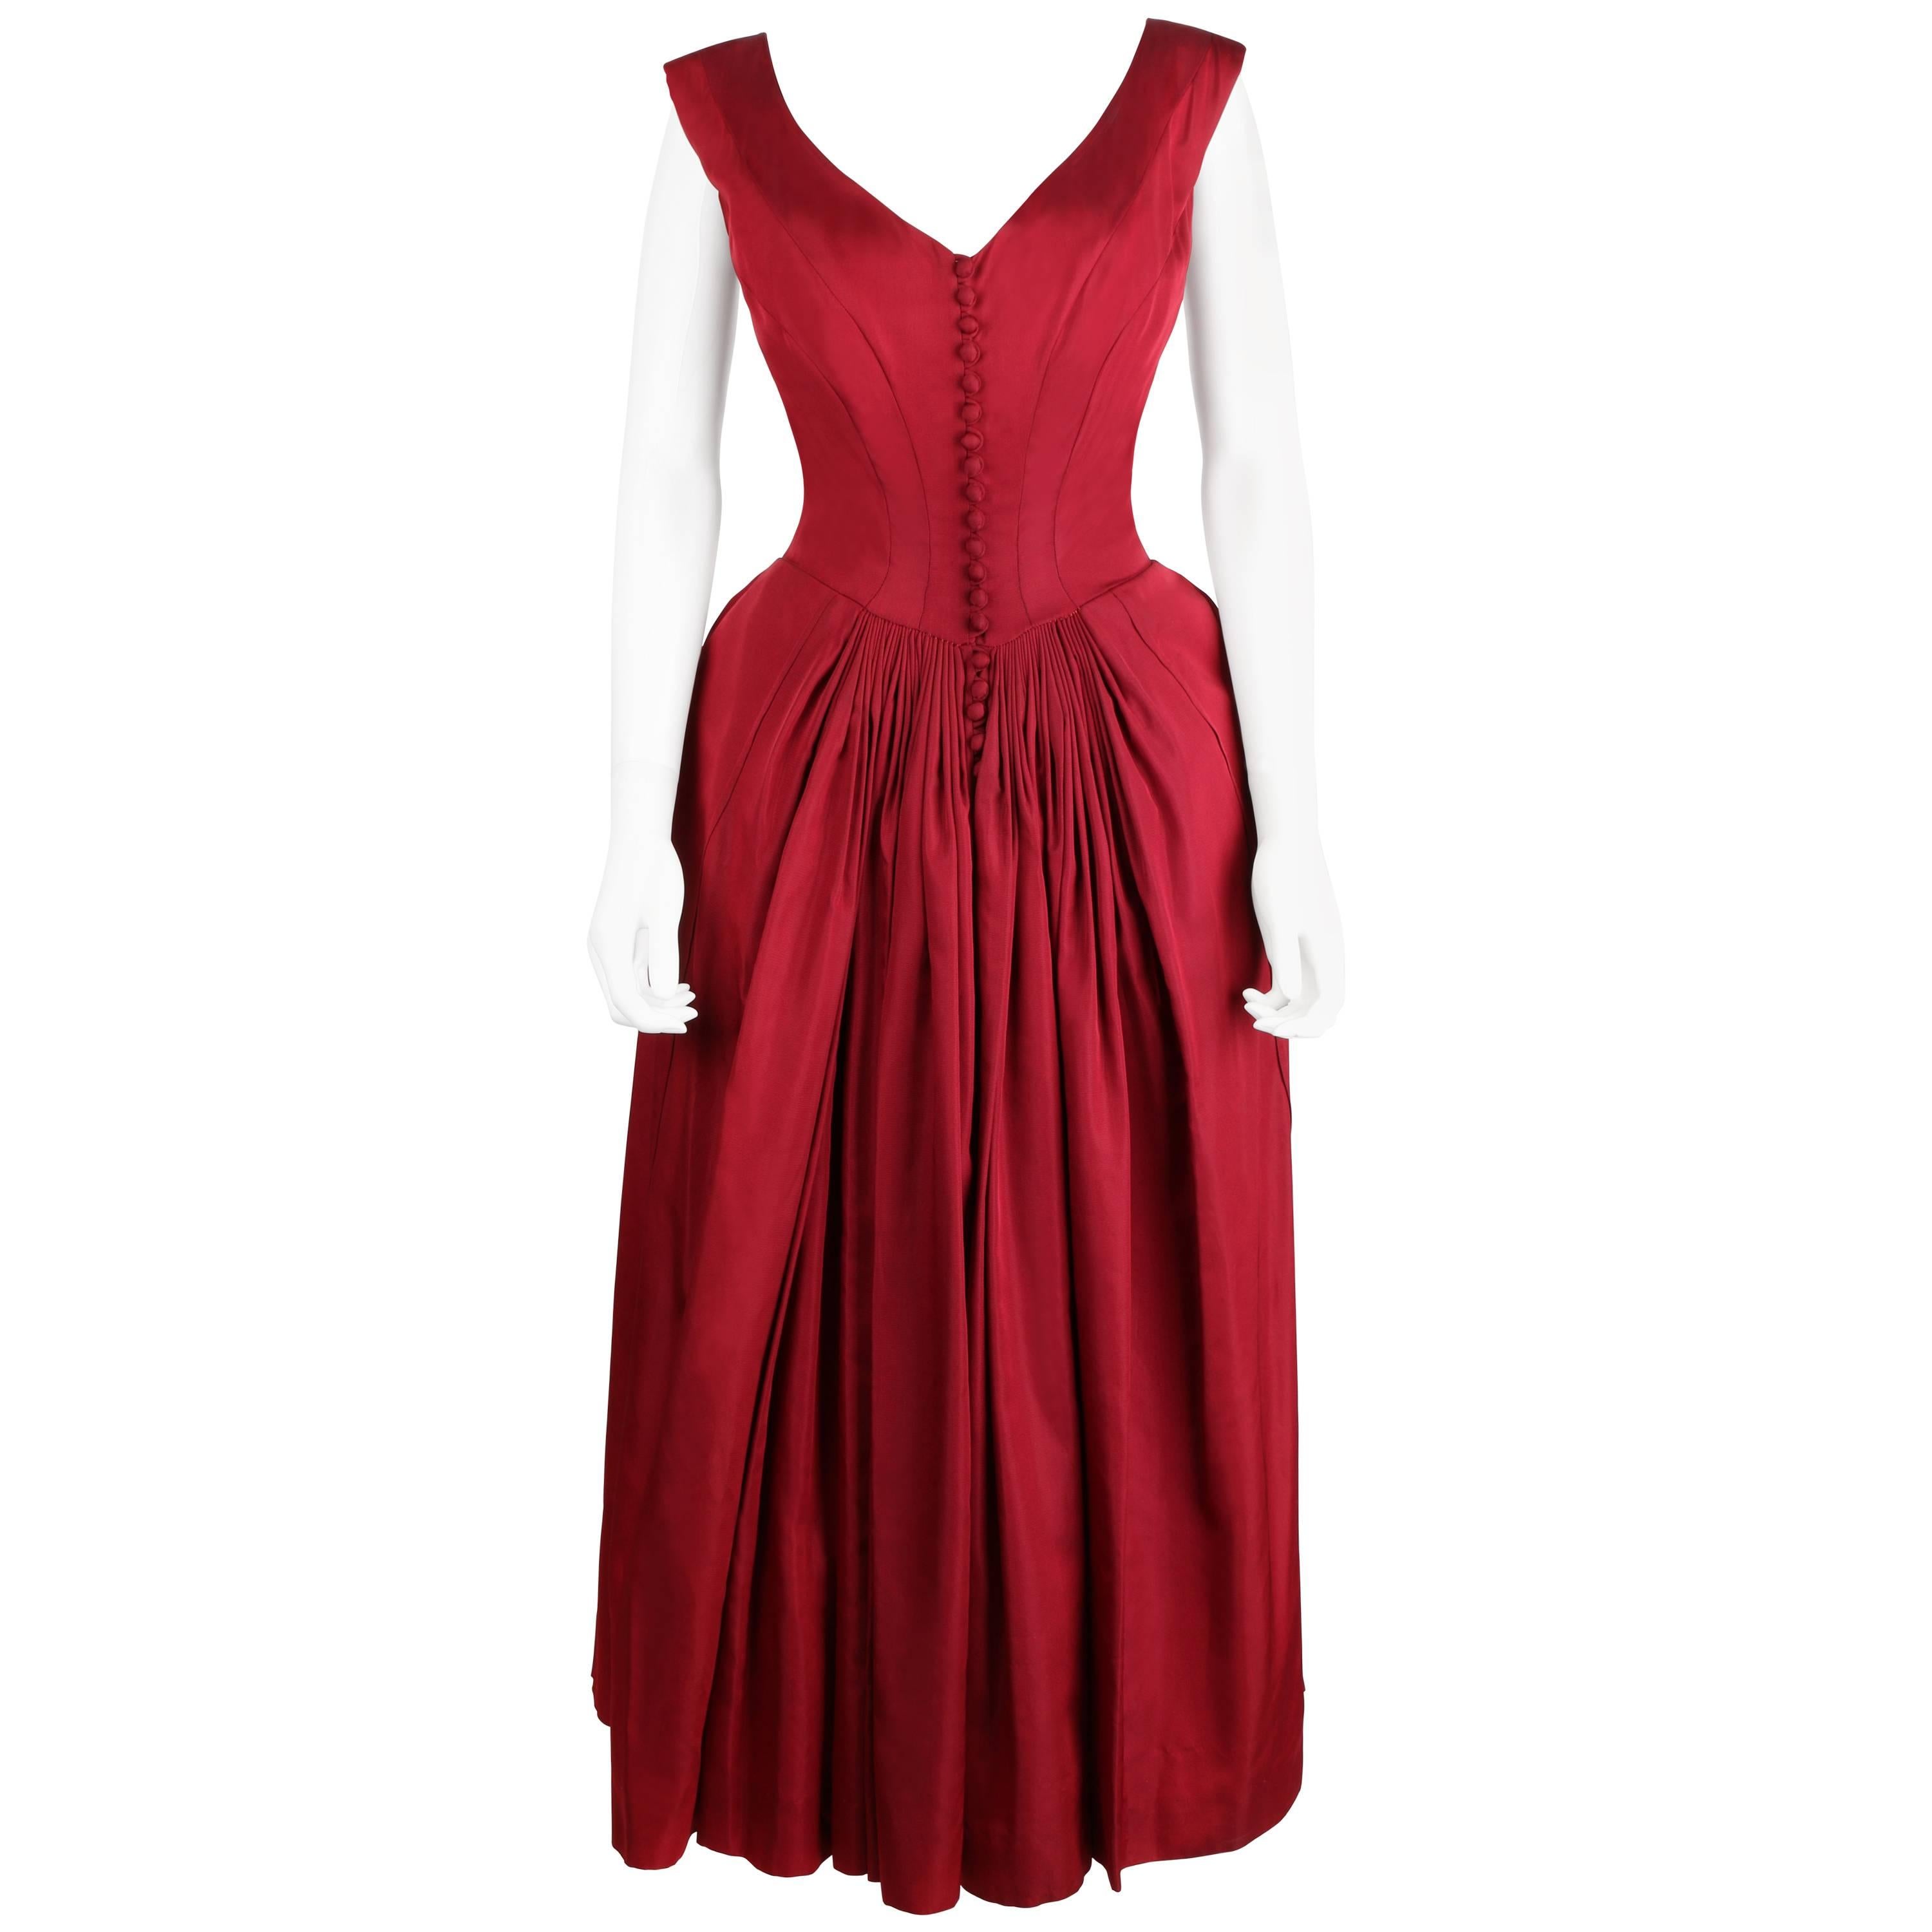 Vtg c.1949 NETTIE ROSENSTEIN Burgundy Red Evening Dress NOS Museum Piece Size S